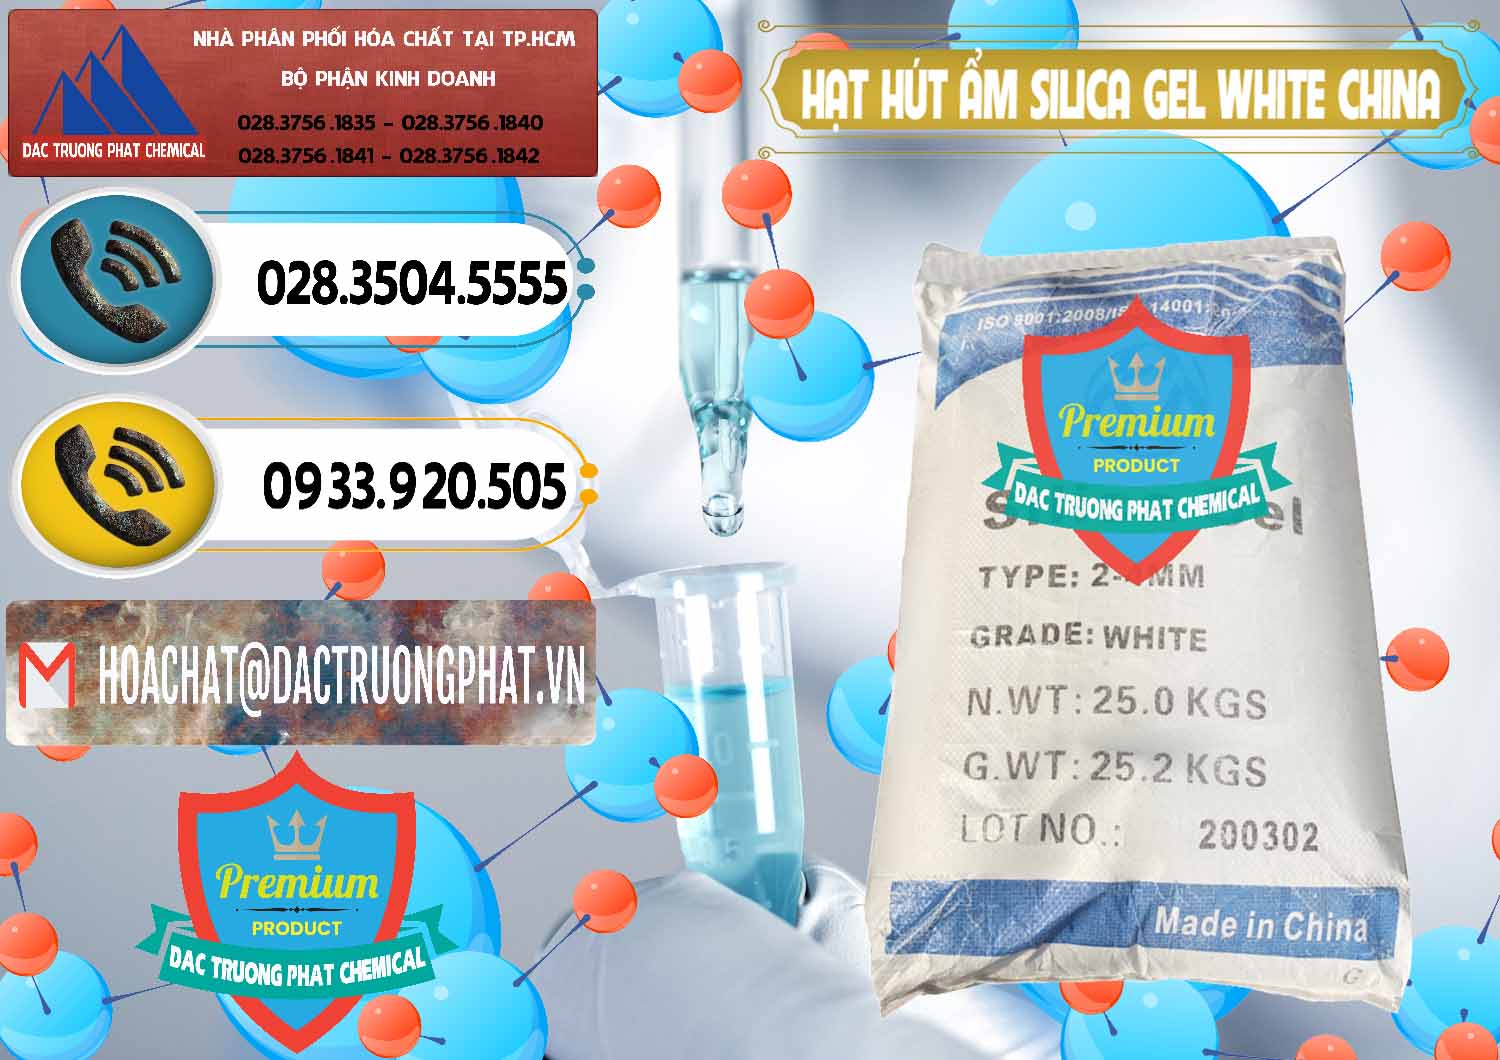 Nơi bán - phân phối Hạt Hút Ẩm Silica Gel White Trung Quốc China - 0297 - Công ty cung cấp _ bán hóa chất tại TP.HCM - hoachatdetnhuom.vn